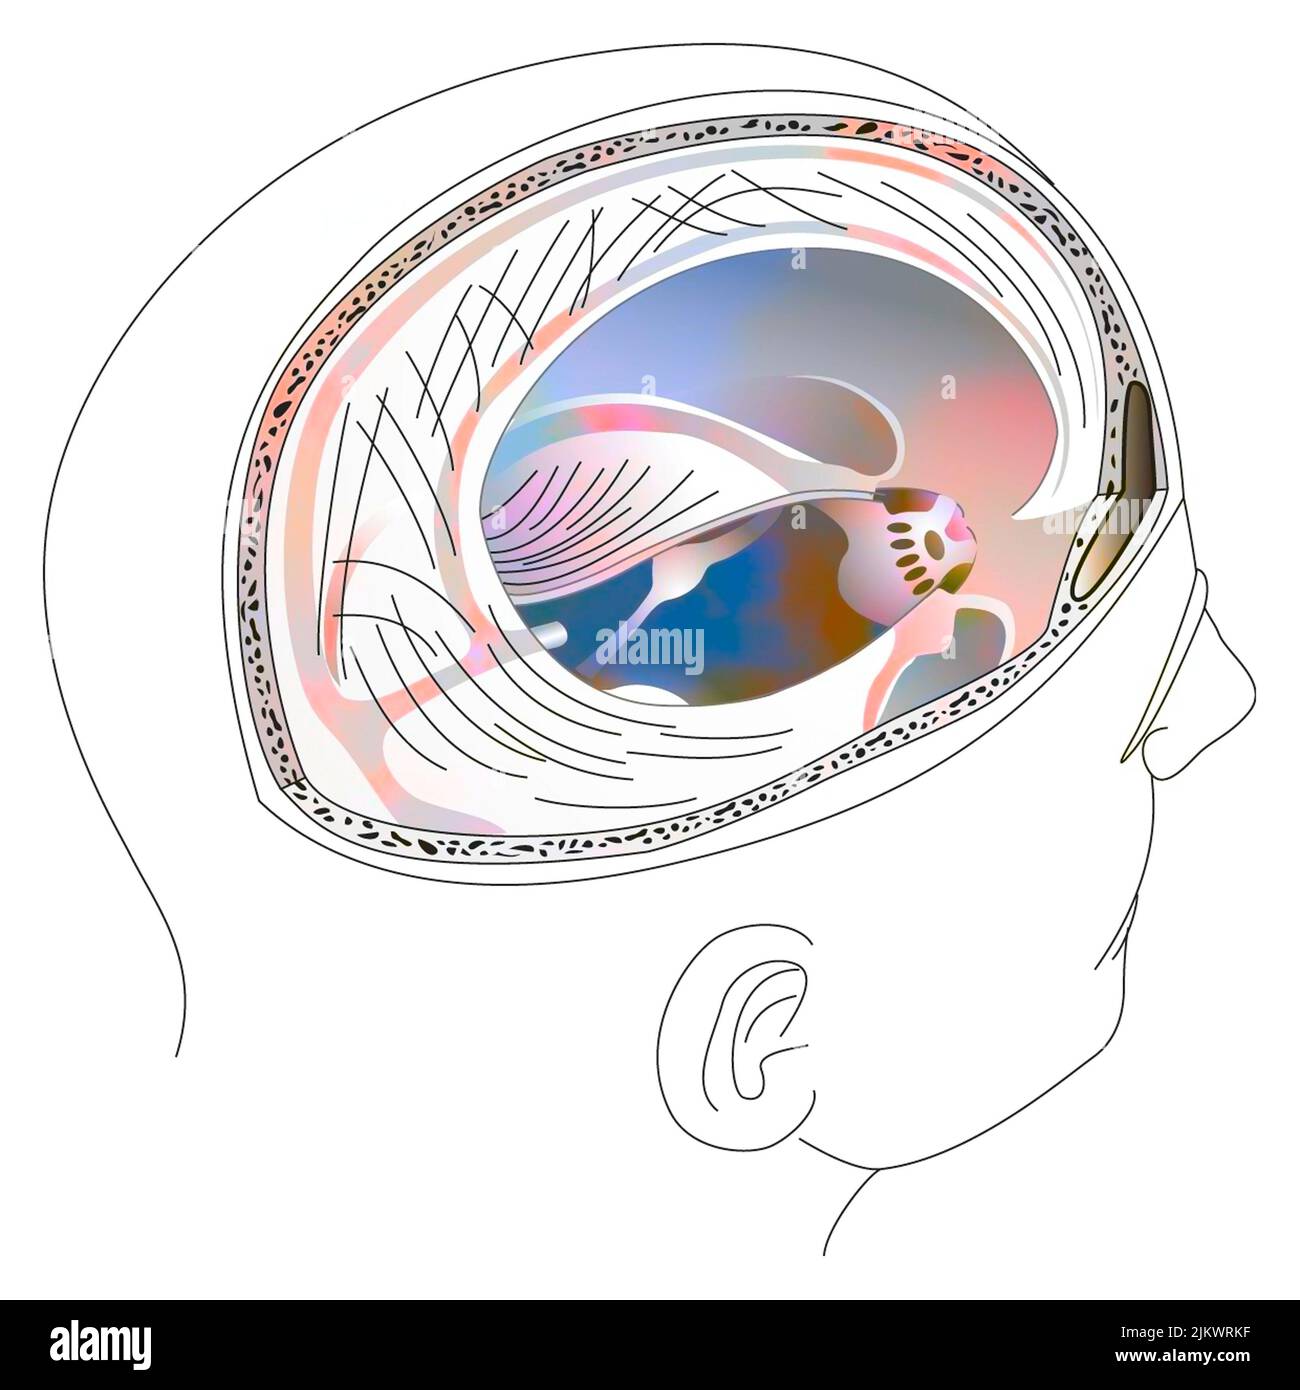 Membranas meníngeas que cubren tanto el cerebro como el cerebelo. Foto de stock